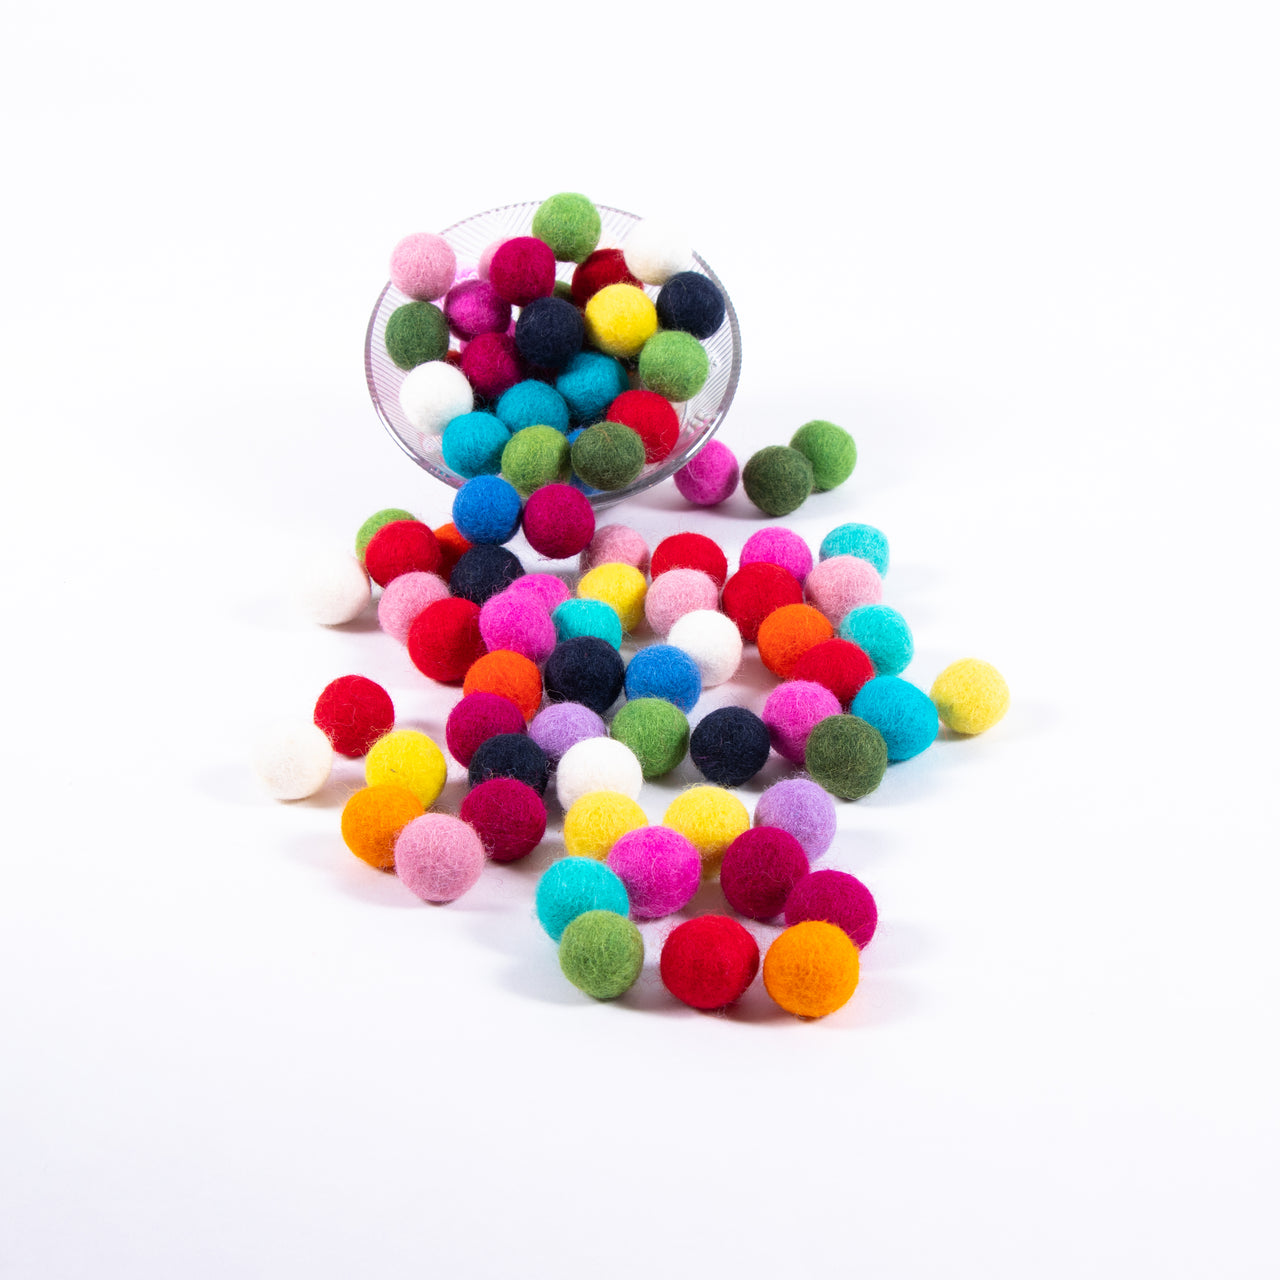 1.5 cm Felt Balls/ Felt Balls Wholesale